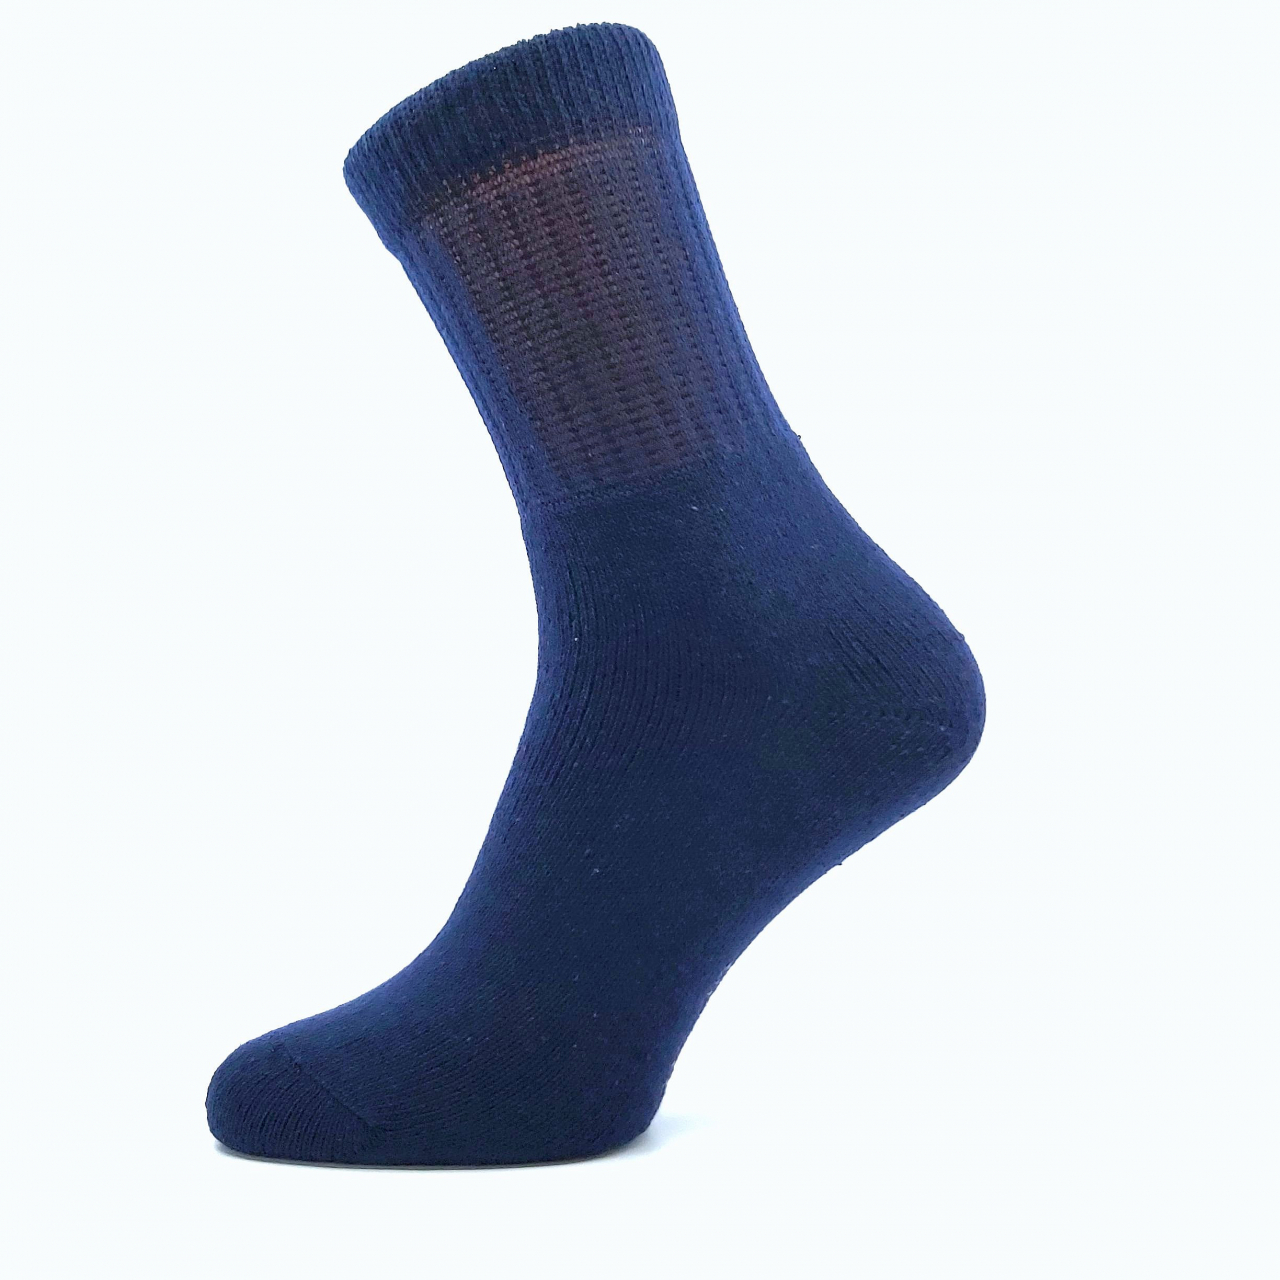 Ponožky trekingové unisex Boma 012-41-39 I - tmavě modré, 39-42